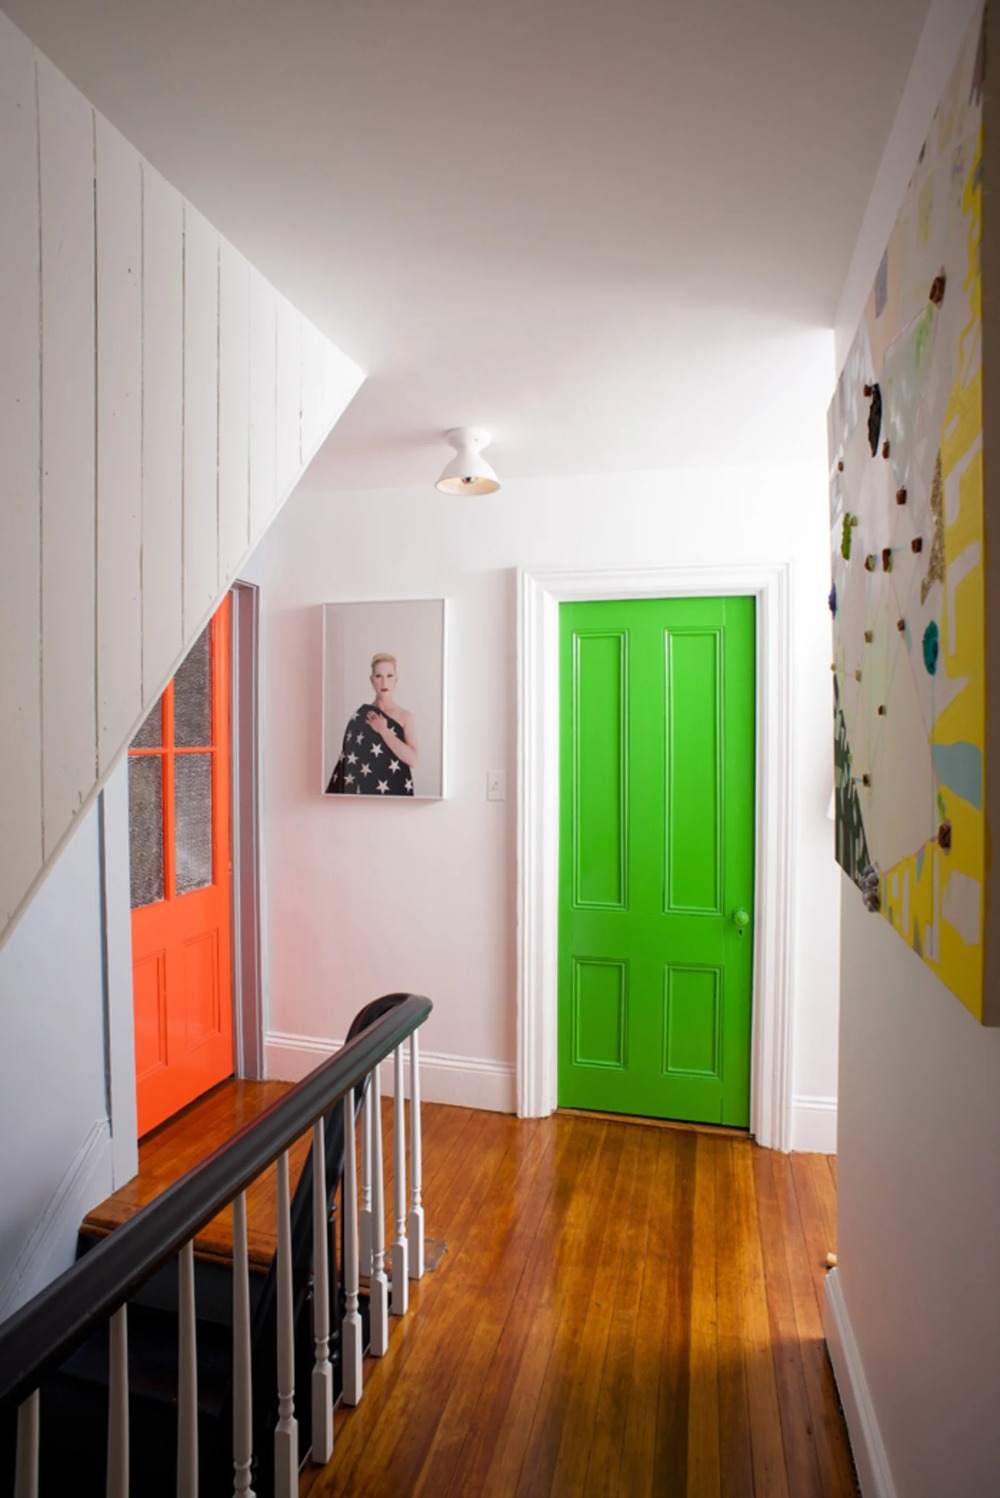 vilken färg grönt och orange att välja för innerdörrar i korridoren